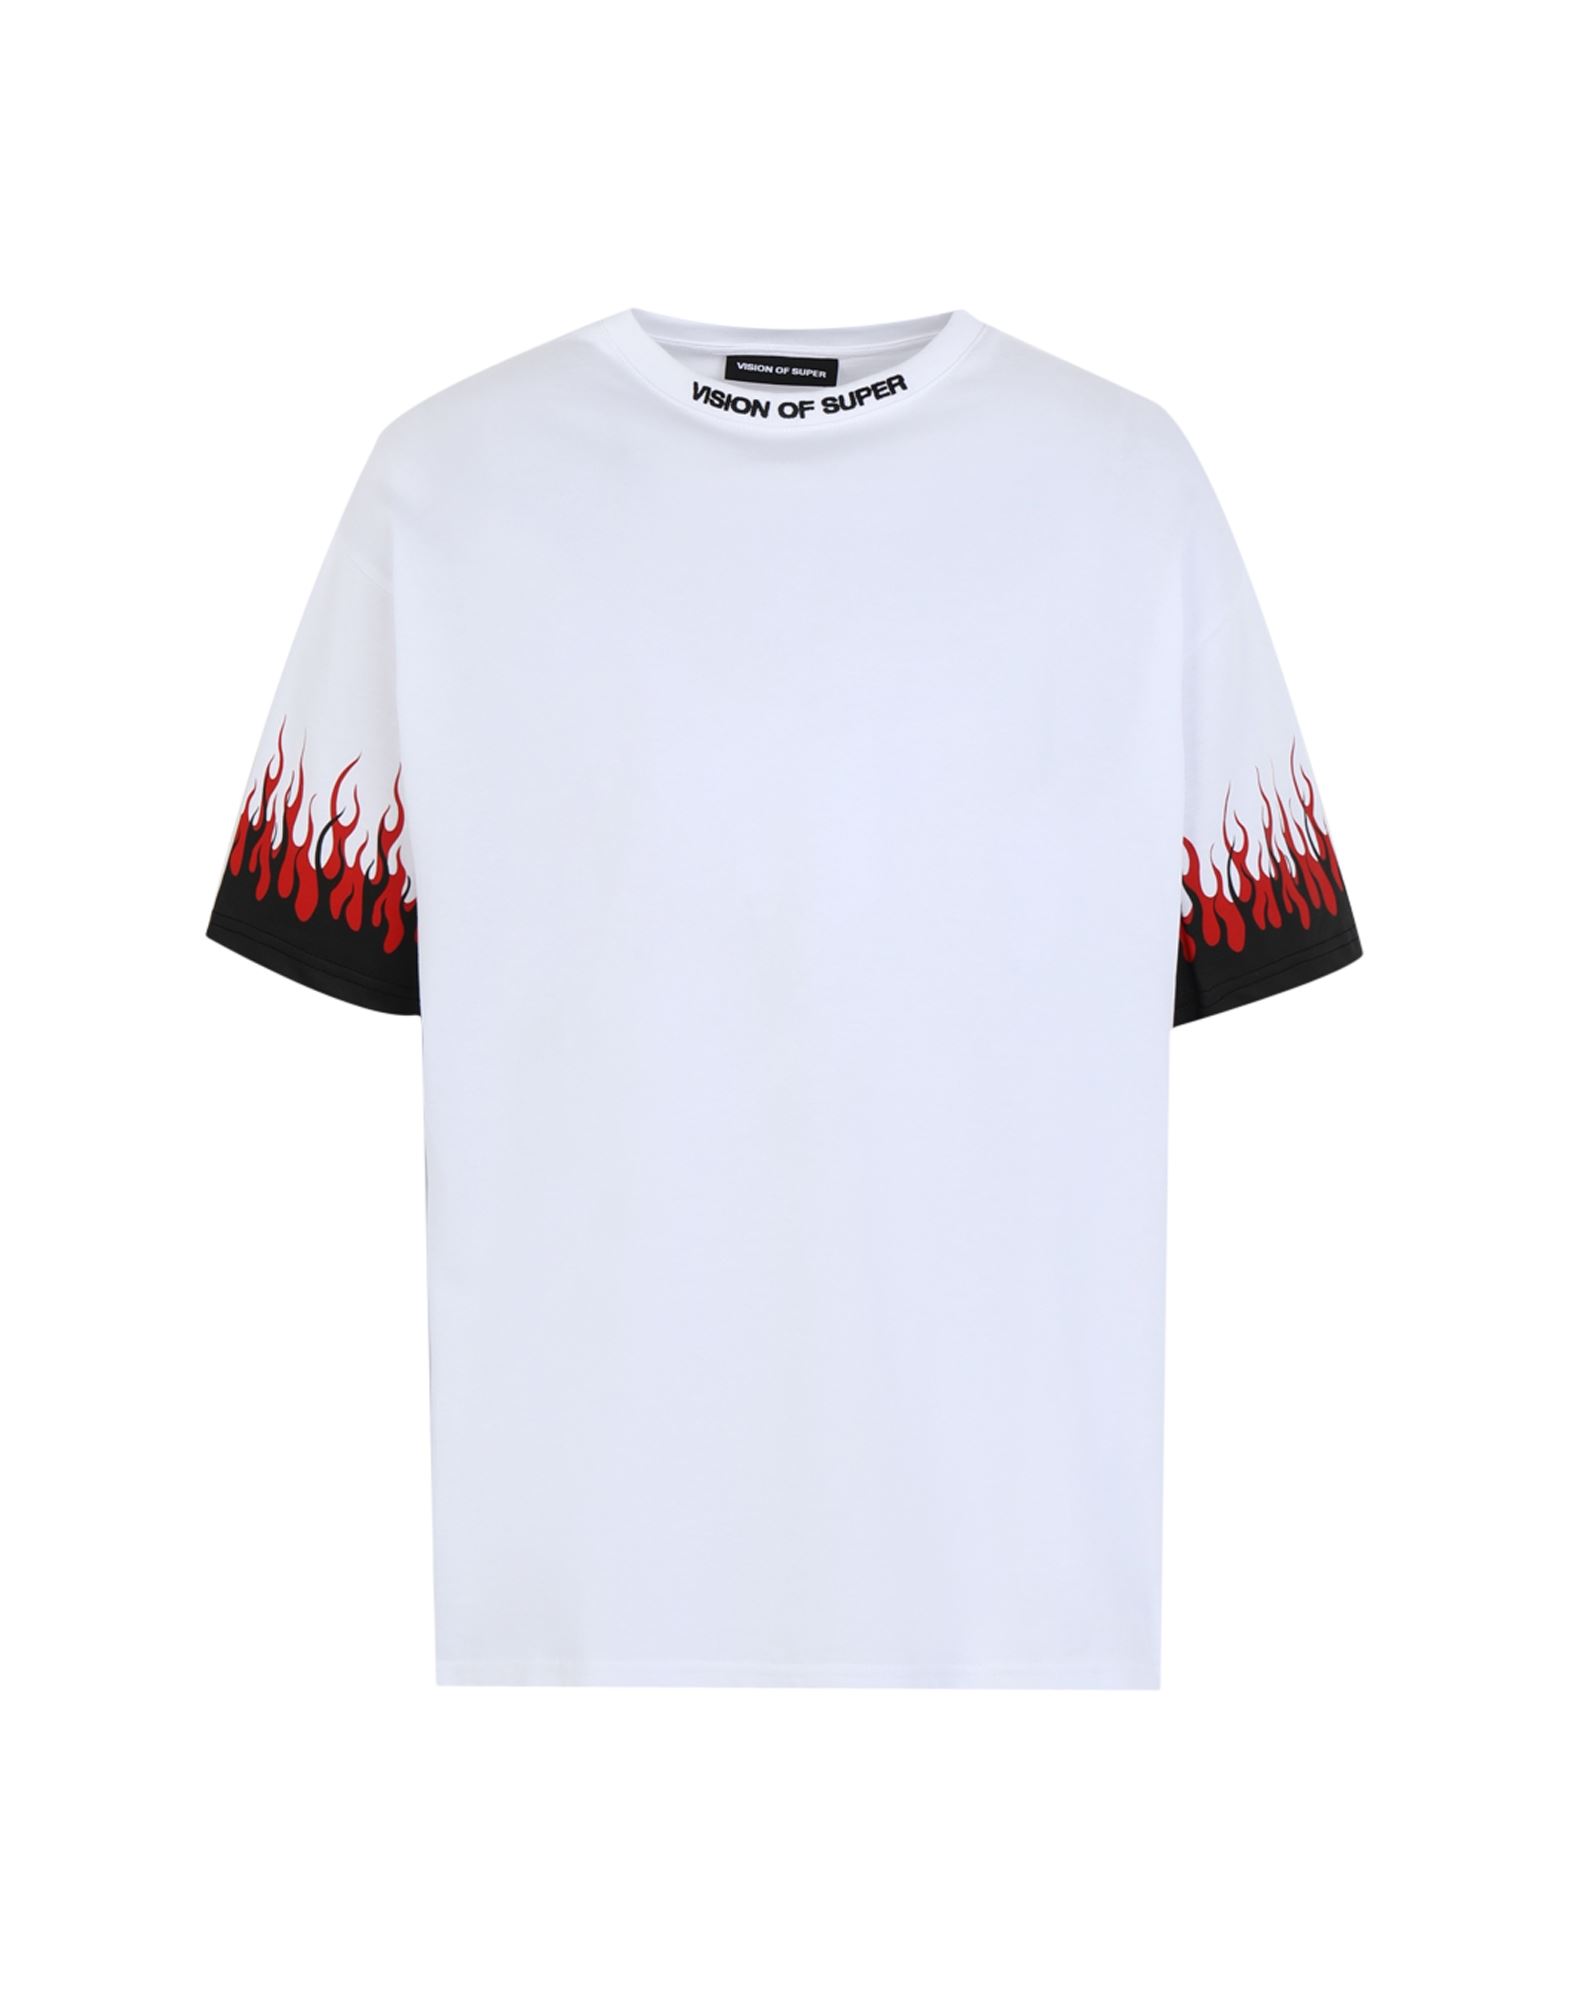 Shop Vision Of Super White T-shirt Double Flames Man T-shirt White Size Xl Cotton